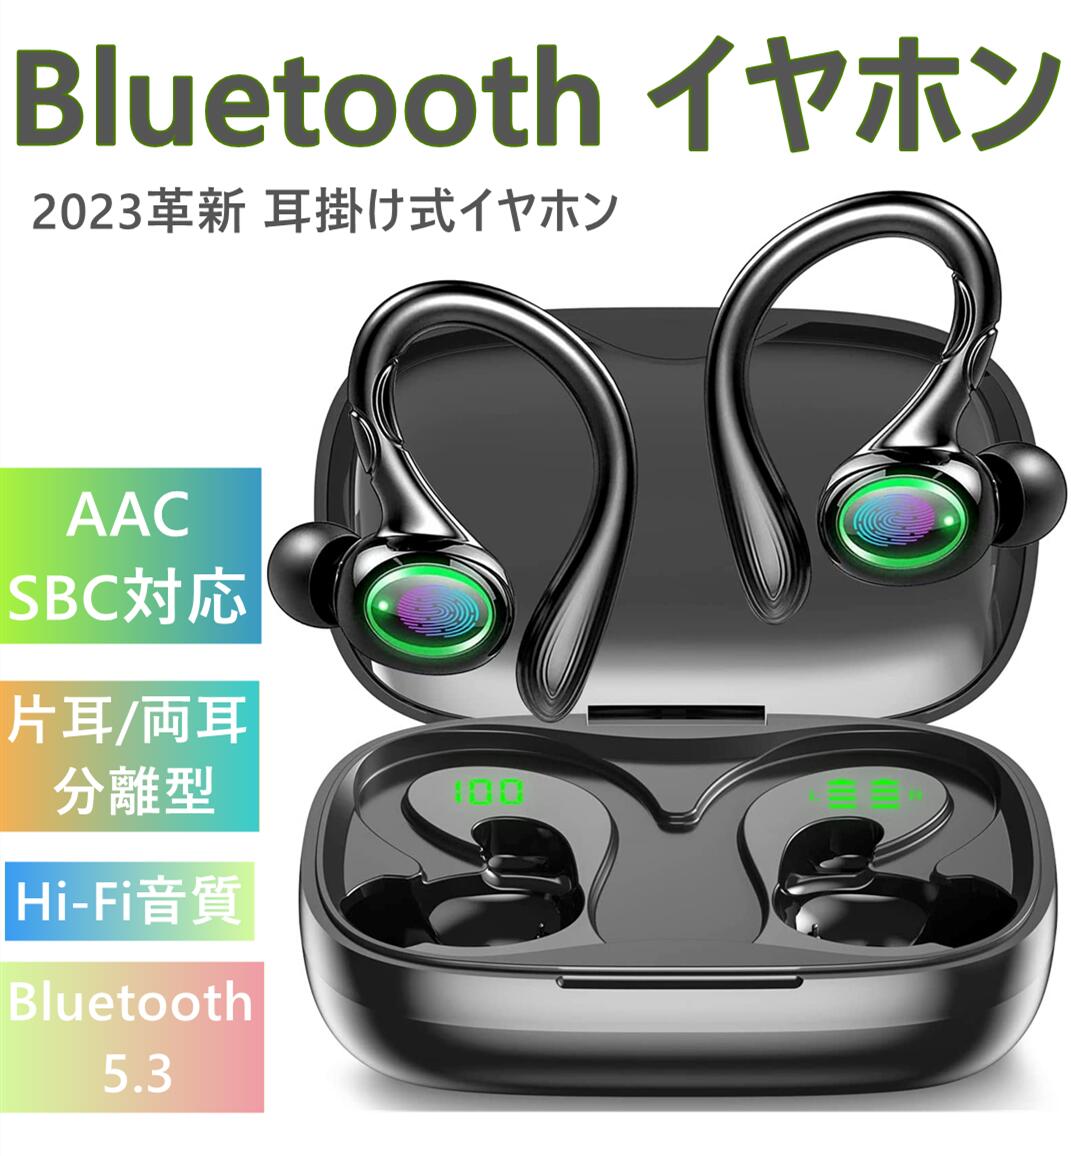 [2023革新 耳掛け式イヤホン] Bluetooth イヤホン ワイヤレスイヤホンブルートゥースイヤホン bluetooth 5.3  最大40時間再生 AAC/SBC対応 Hi-Fi音質 落ちにくい 快適装着感 LEDバッテリー残量ディスプレイ bigsmileshop